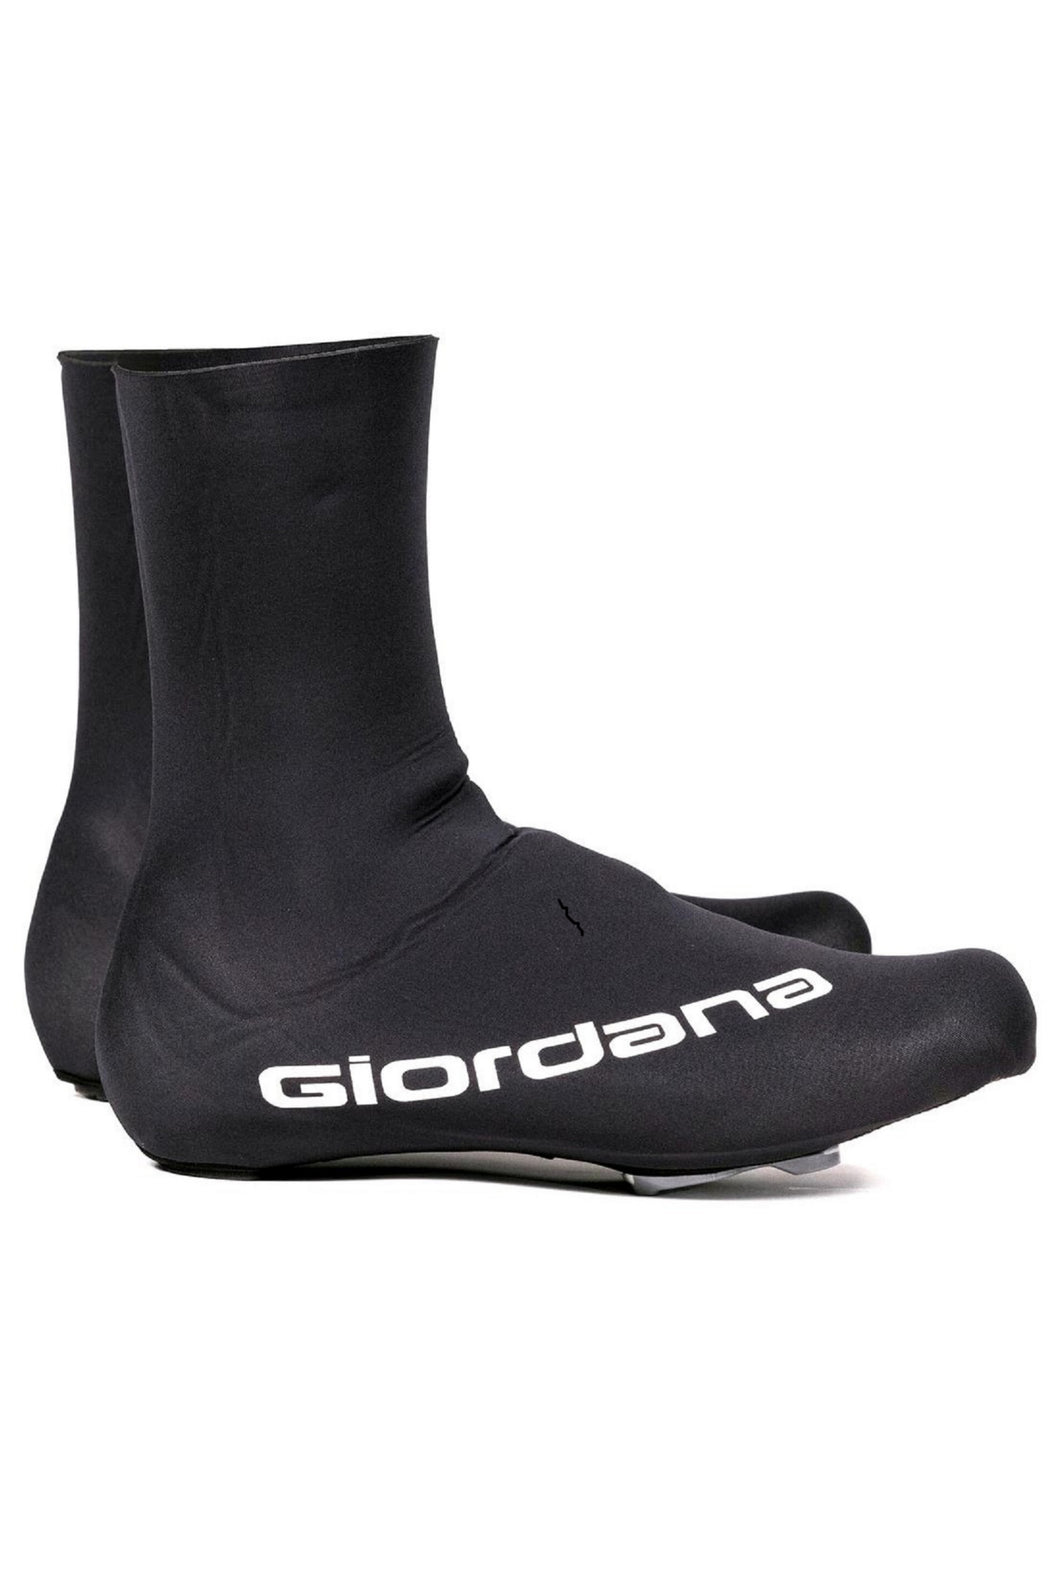 Giordana Neoprene Shoe Cover - Black